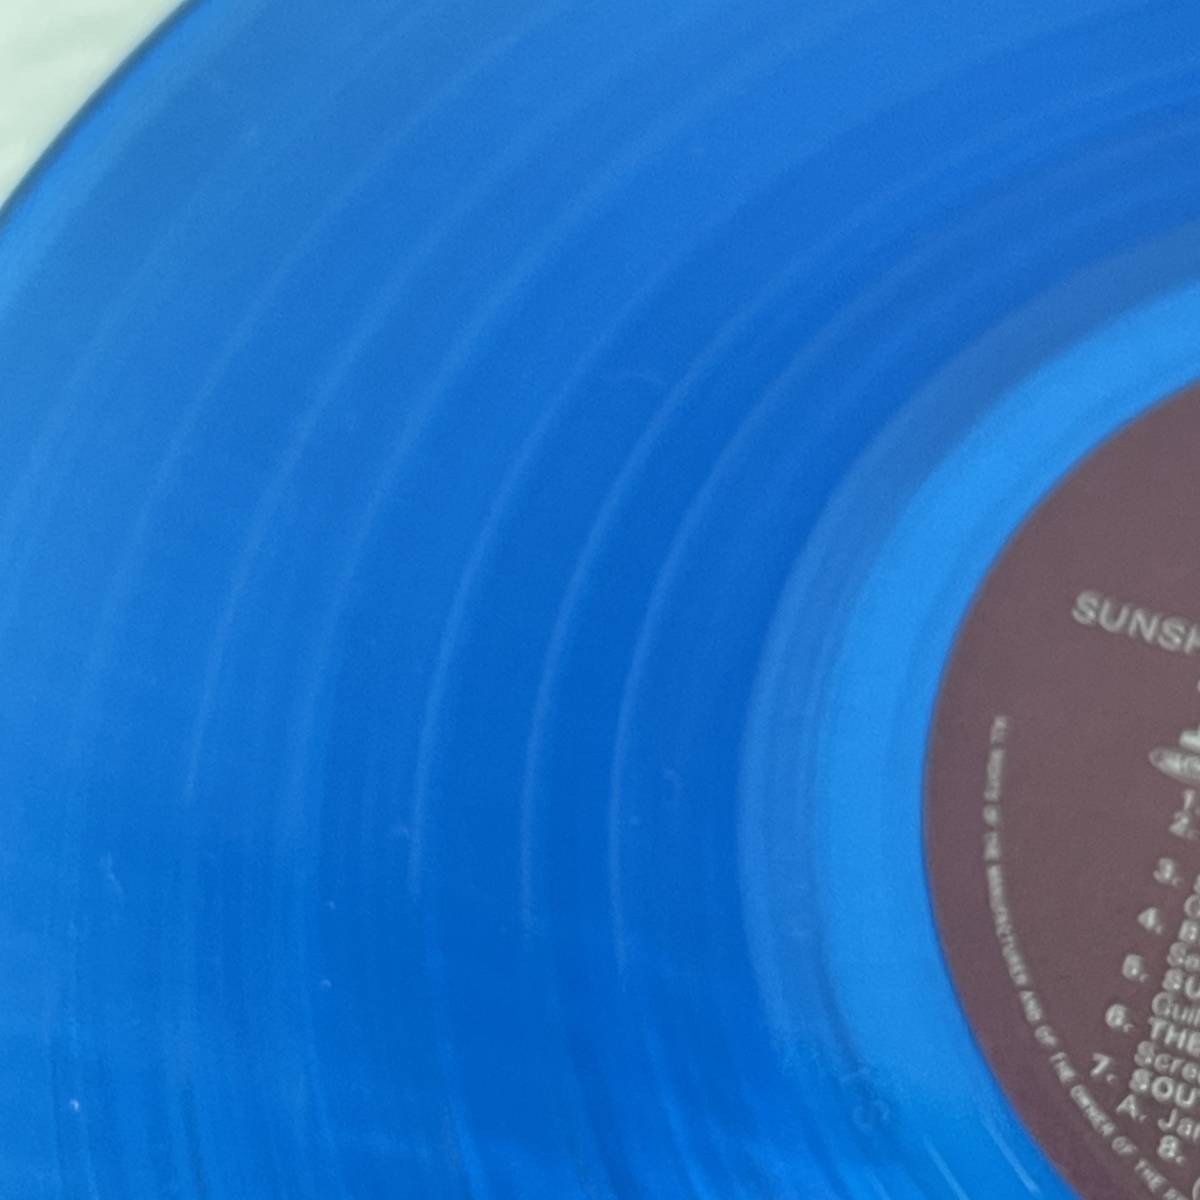 ザ・ビーチ・ボーイズ / サンシャイン・デイズ ECS-81576 初回盤 / LPレコード マリンブルーカラー盤 青 THE BEACH BOYS_画像6